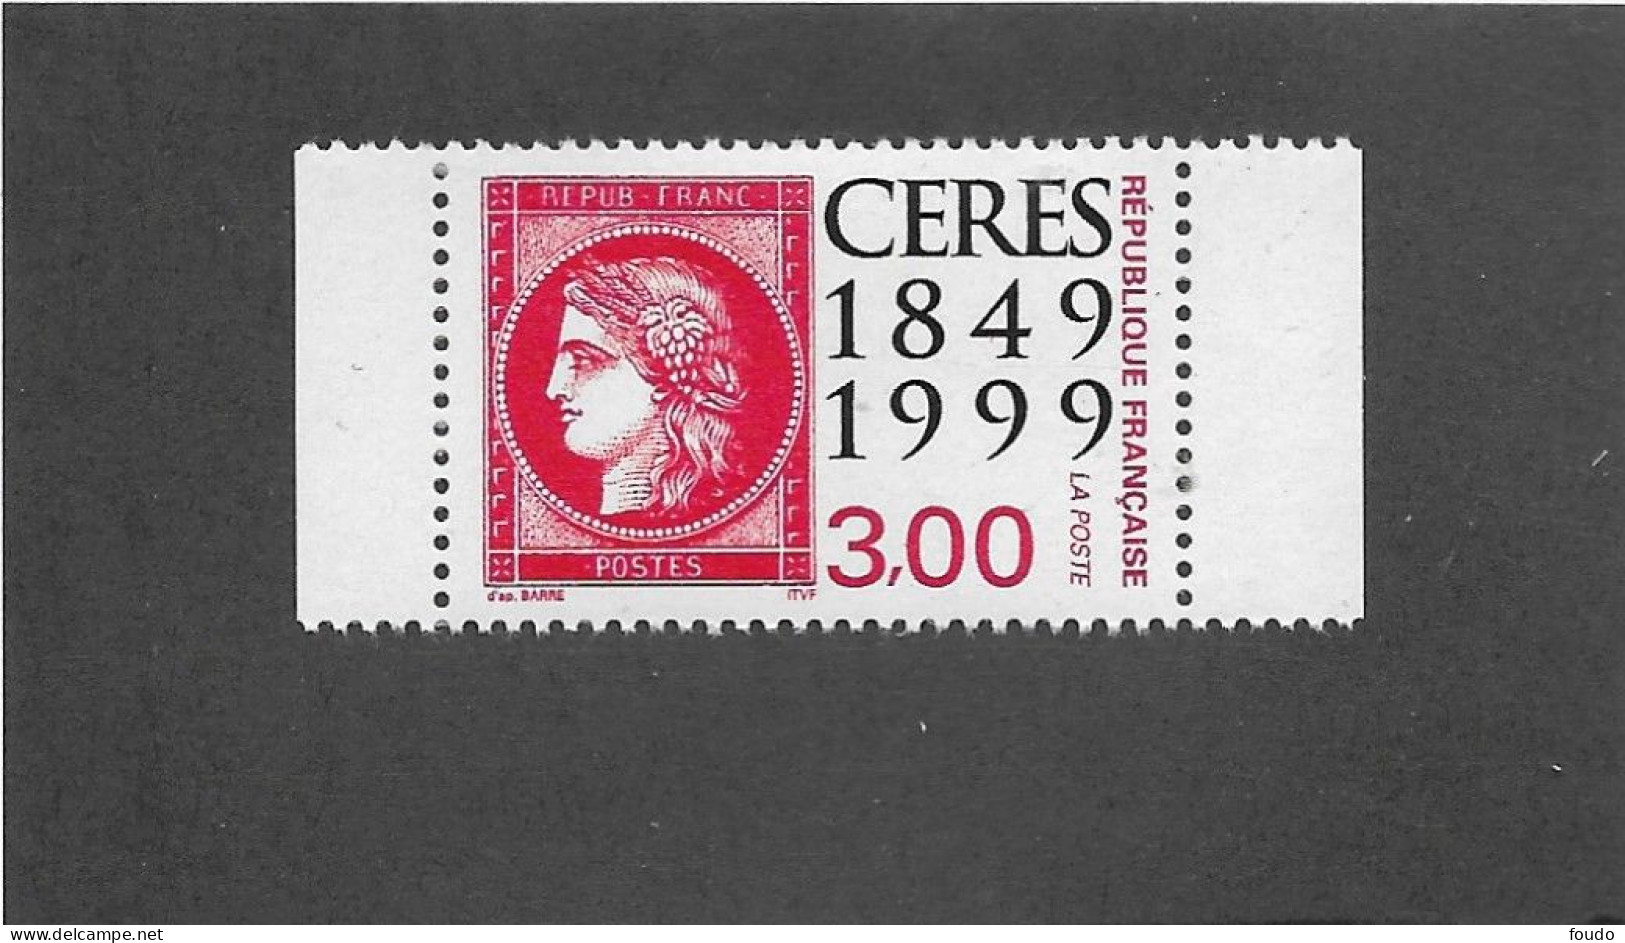 FRANCE 1999 -  N°YT 3212**neuf - Unused Stamps